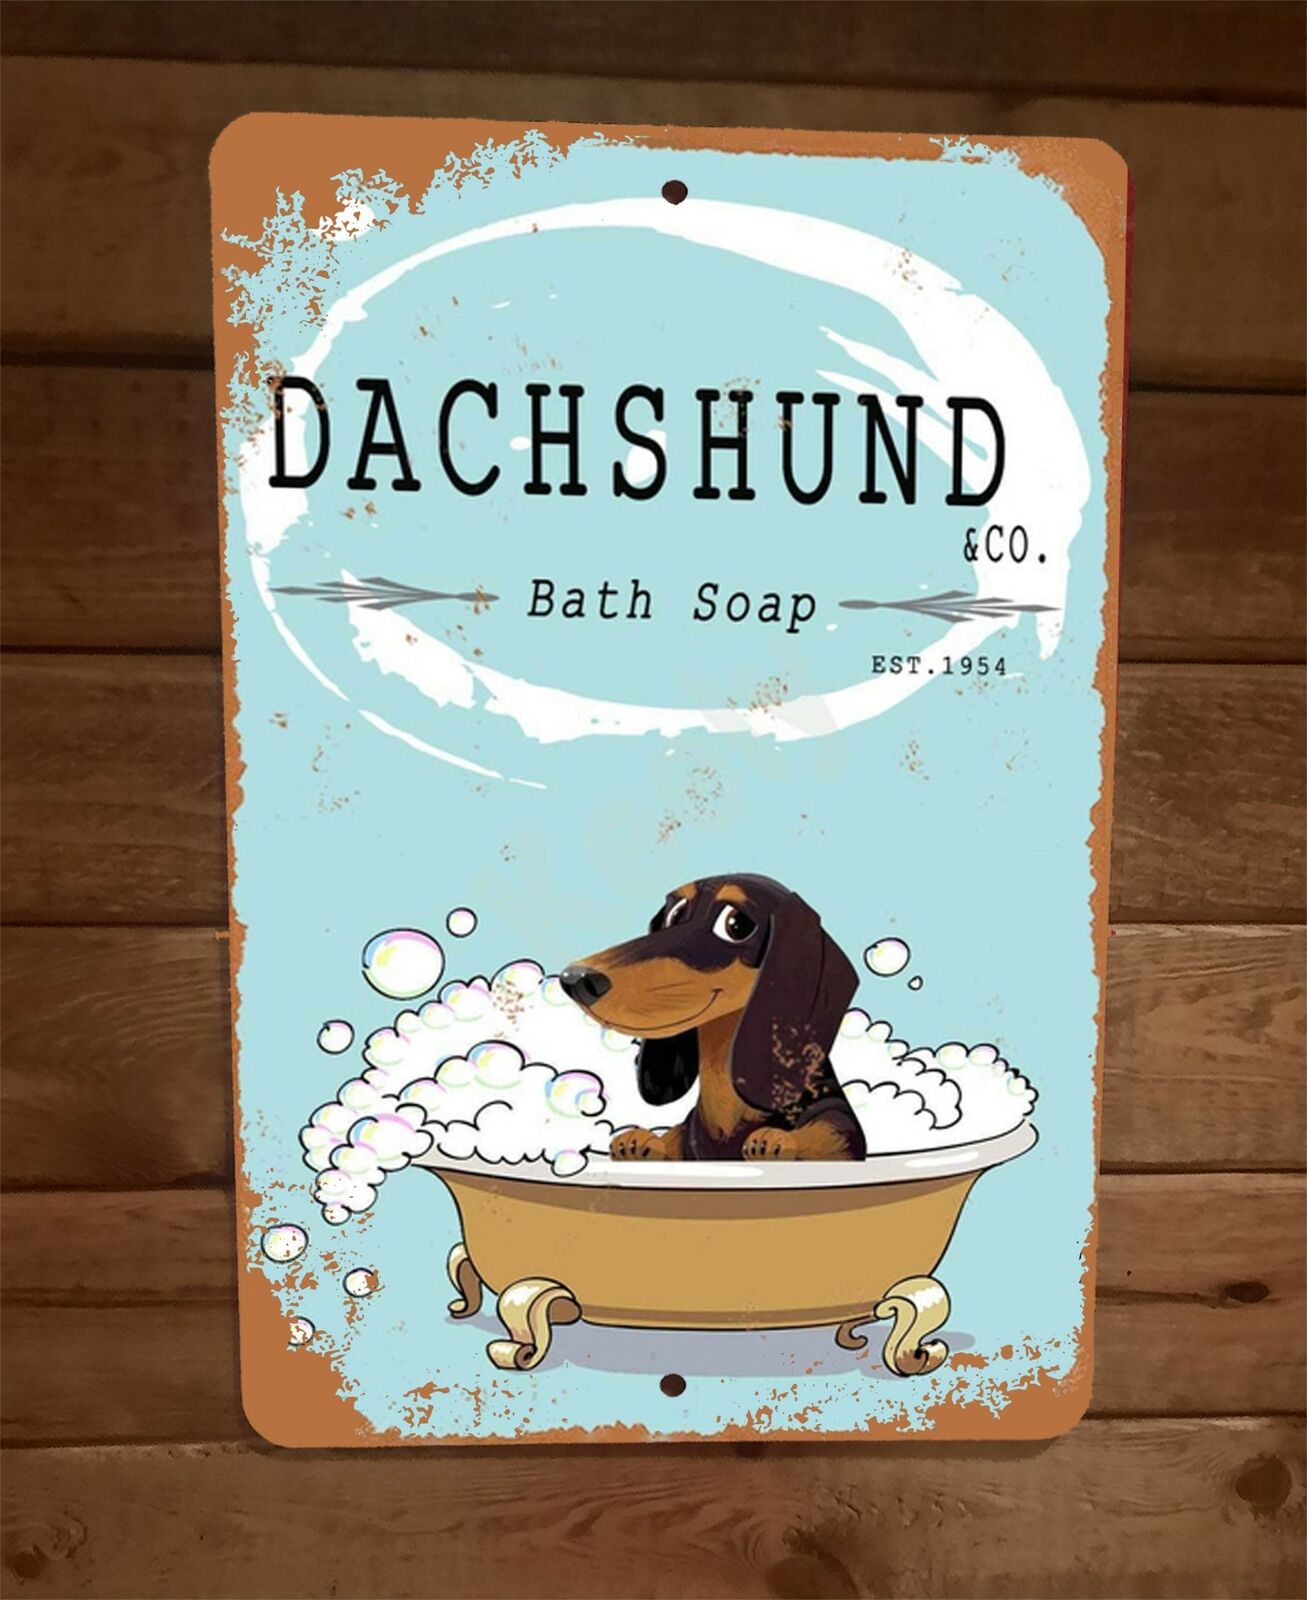 Dachshund Wiener Dog Bath Soap Tub Cartoon Art 8x12 Metal Wall Animal Sign